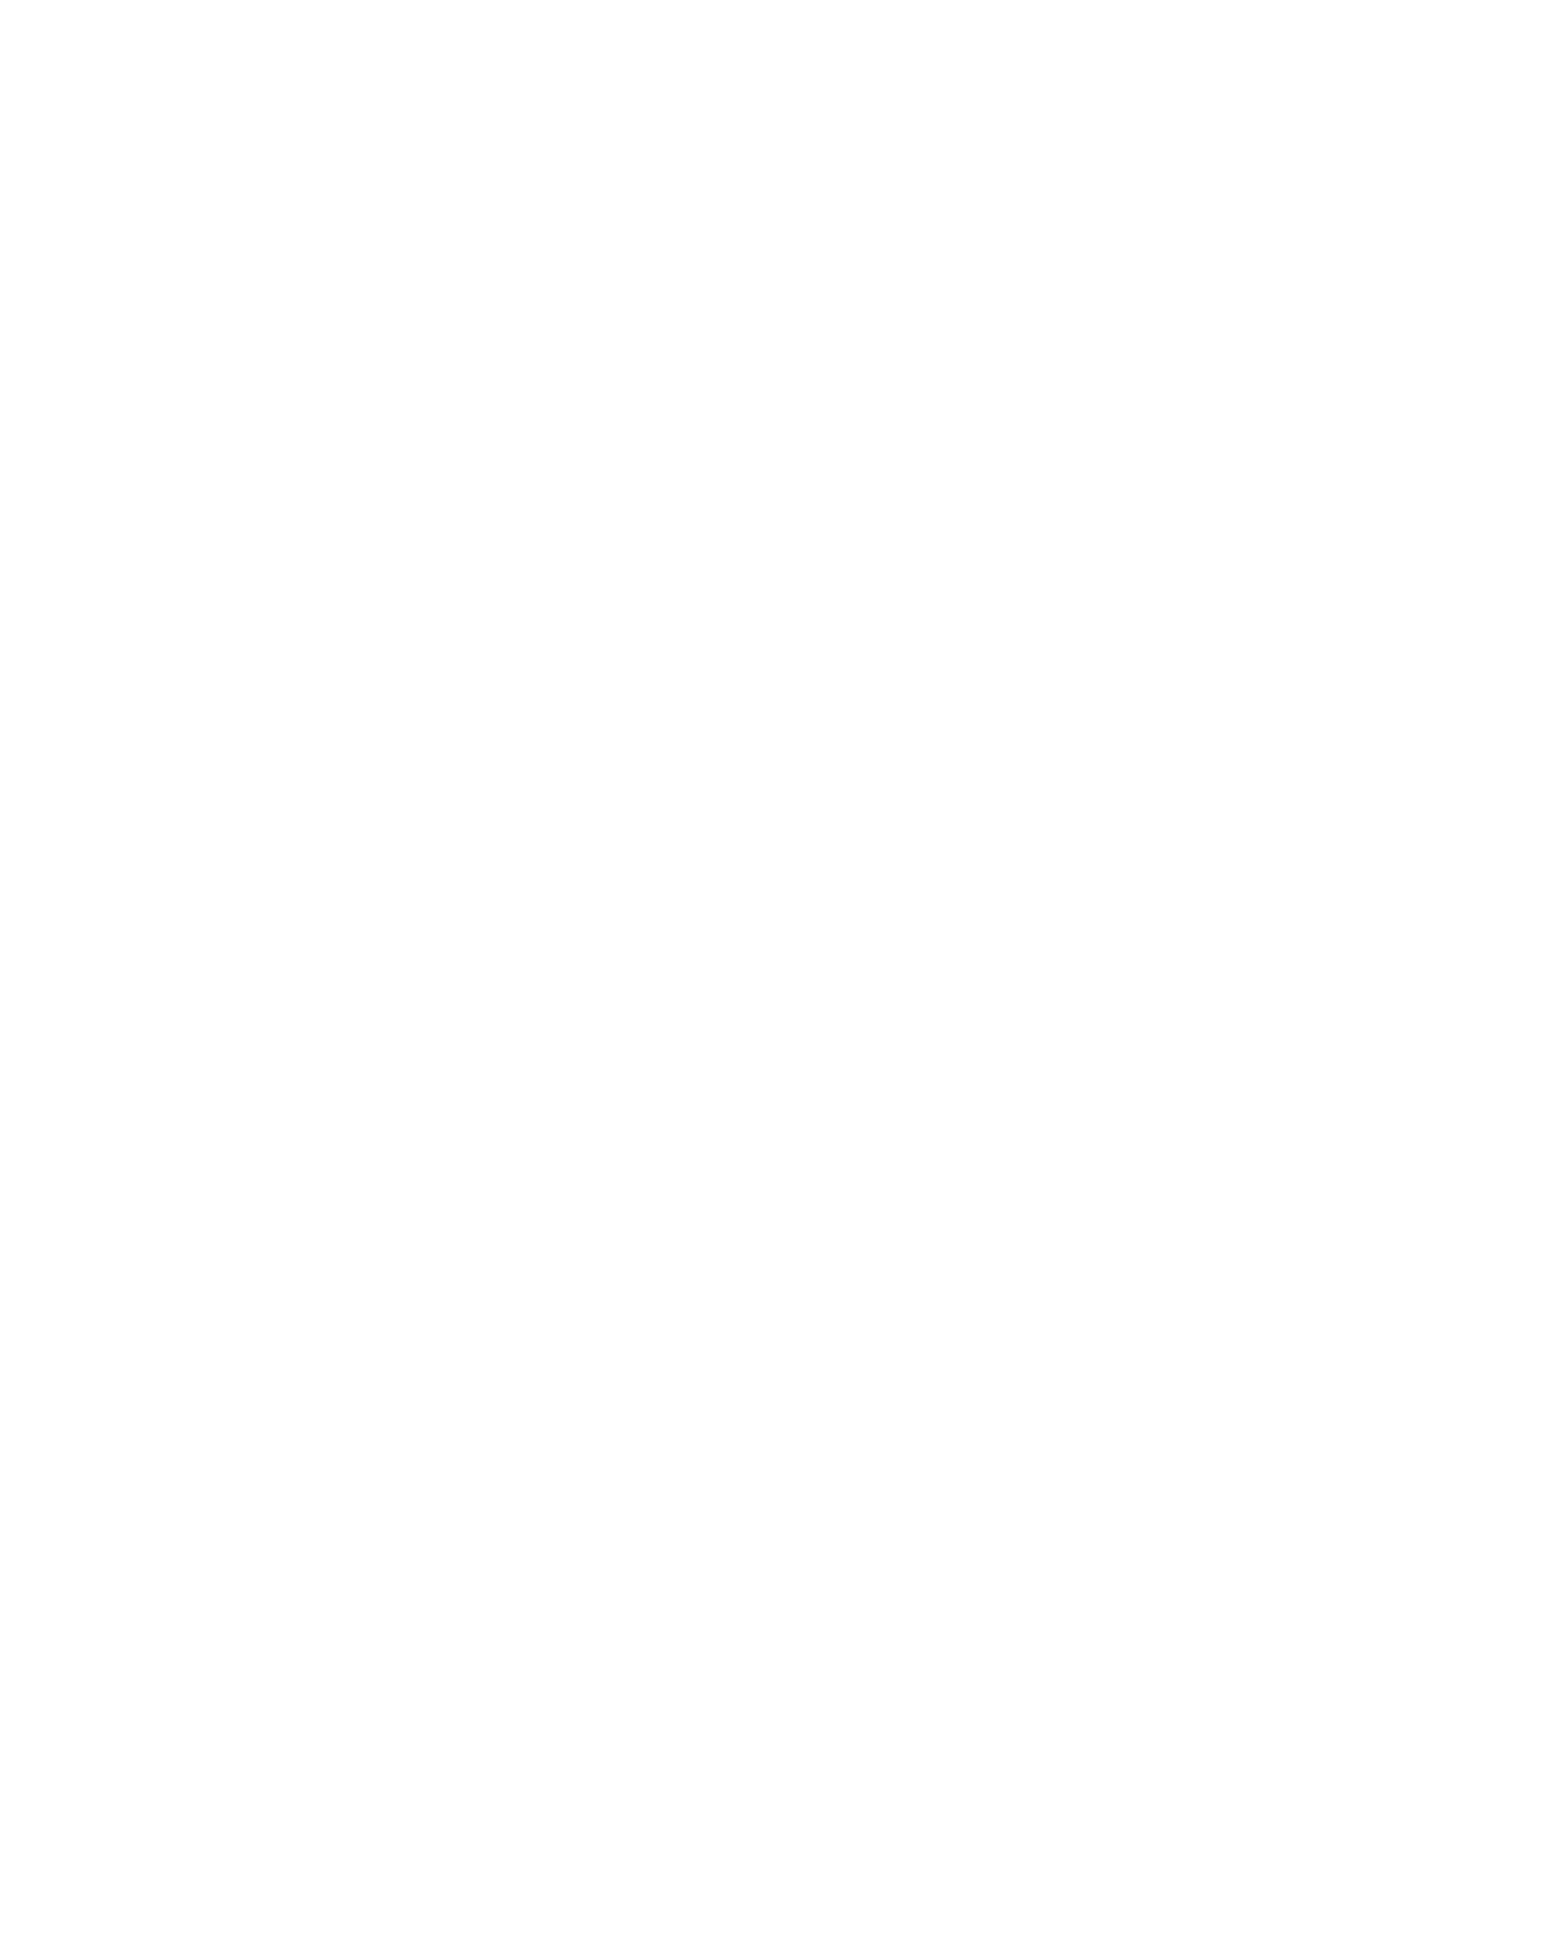 Фотография Всеволода Мейерхольда с дарственной надписью. 1926 год. Санкт-Петербургский государственный музей театрального и музыкального искусства, Санкт-Петербург